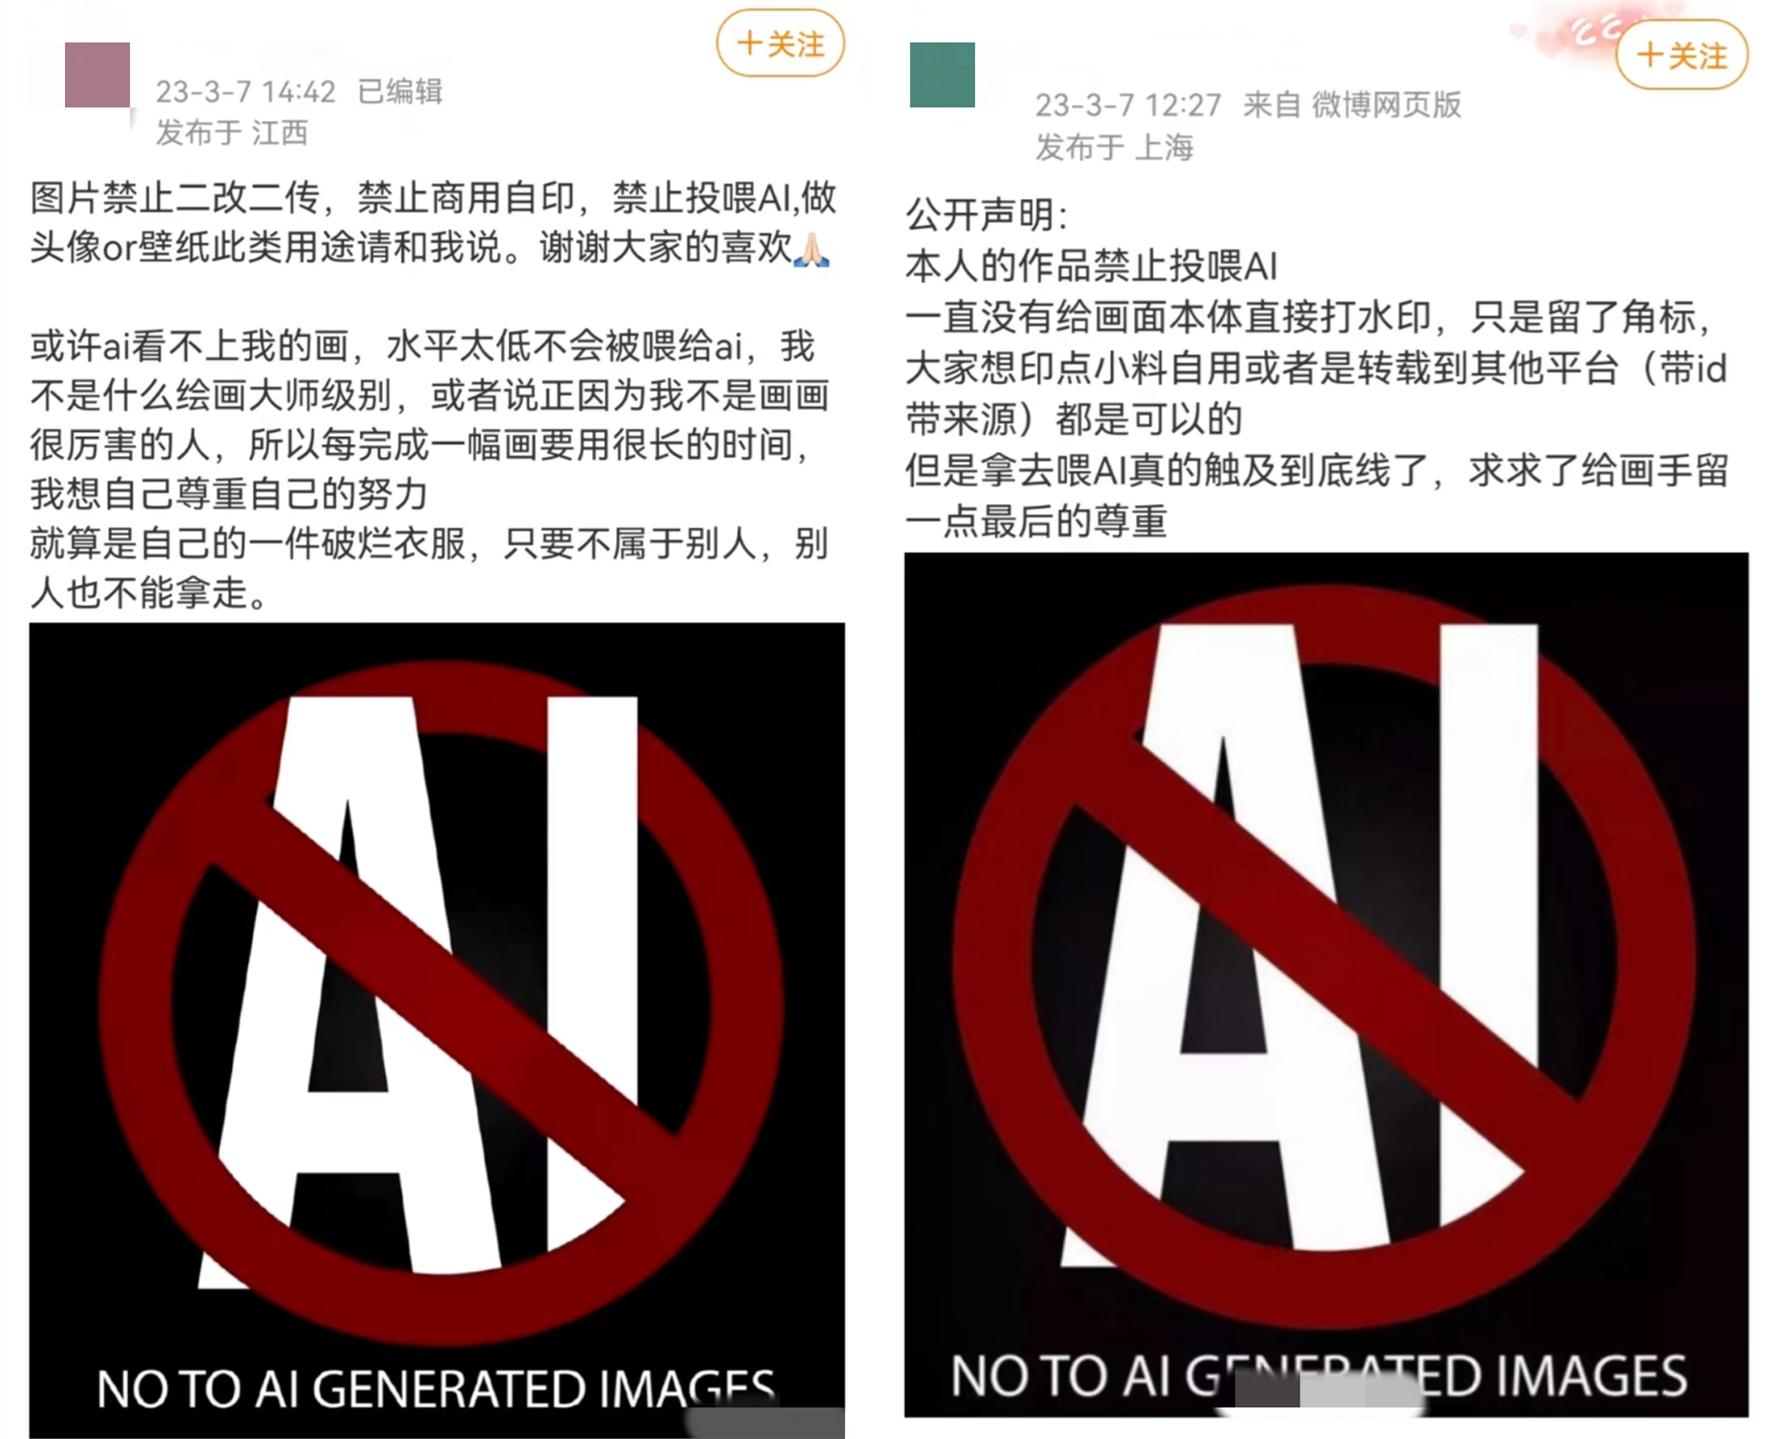 画手联合反对AIGC，也有画手公开抵制后遭网暴